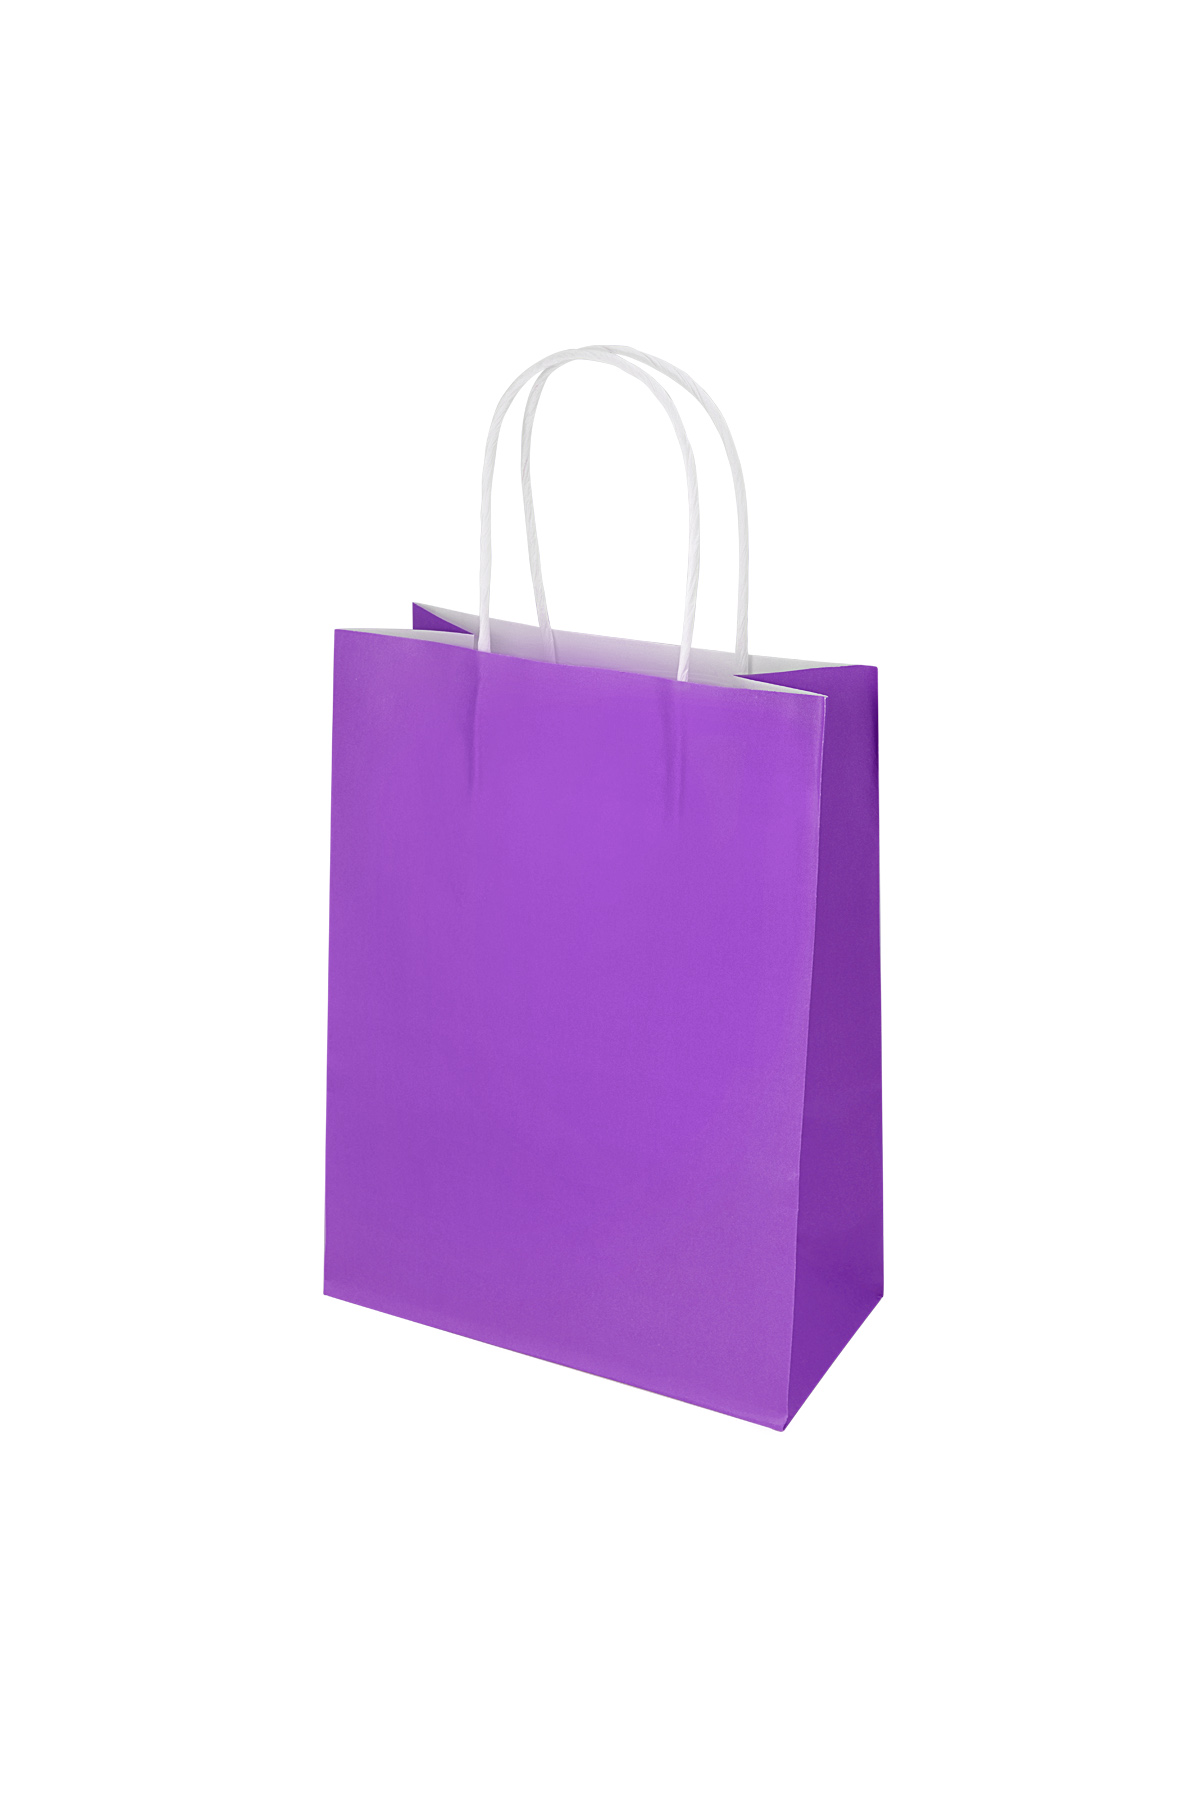 Bags plain 50 pieces small - purple Paper